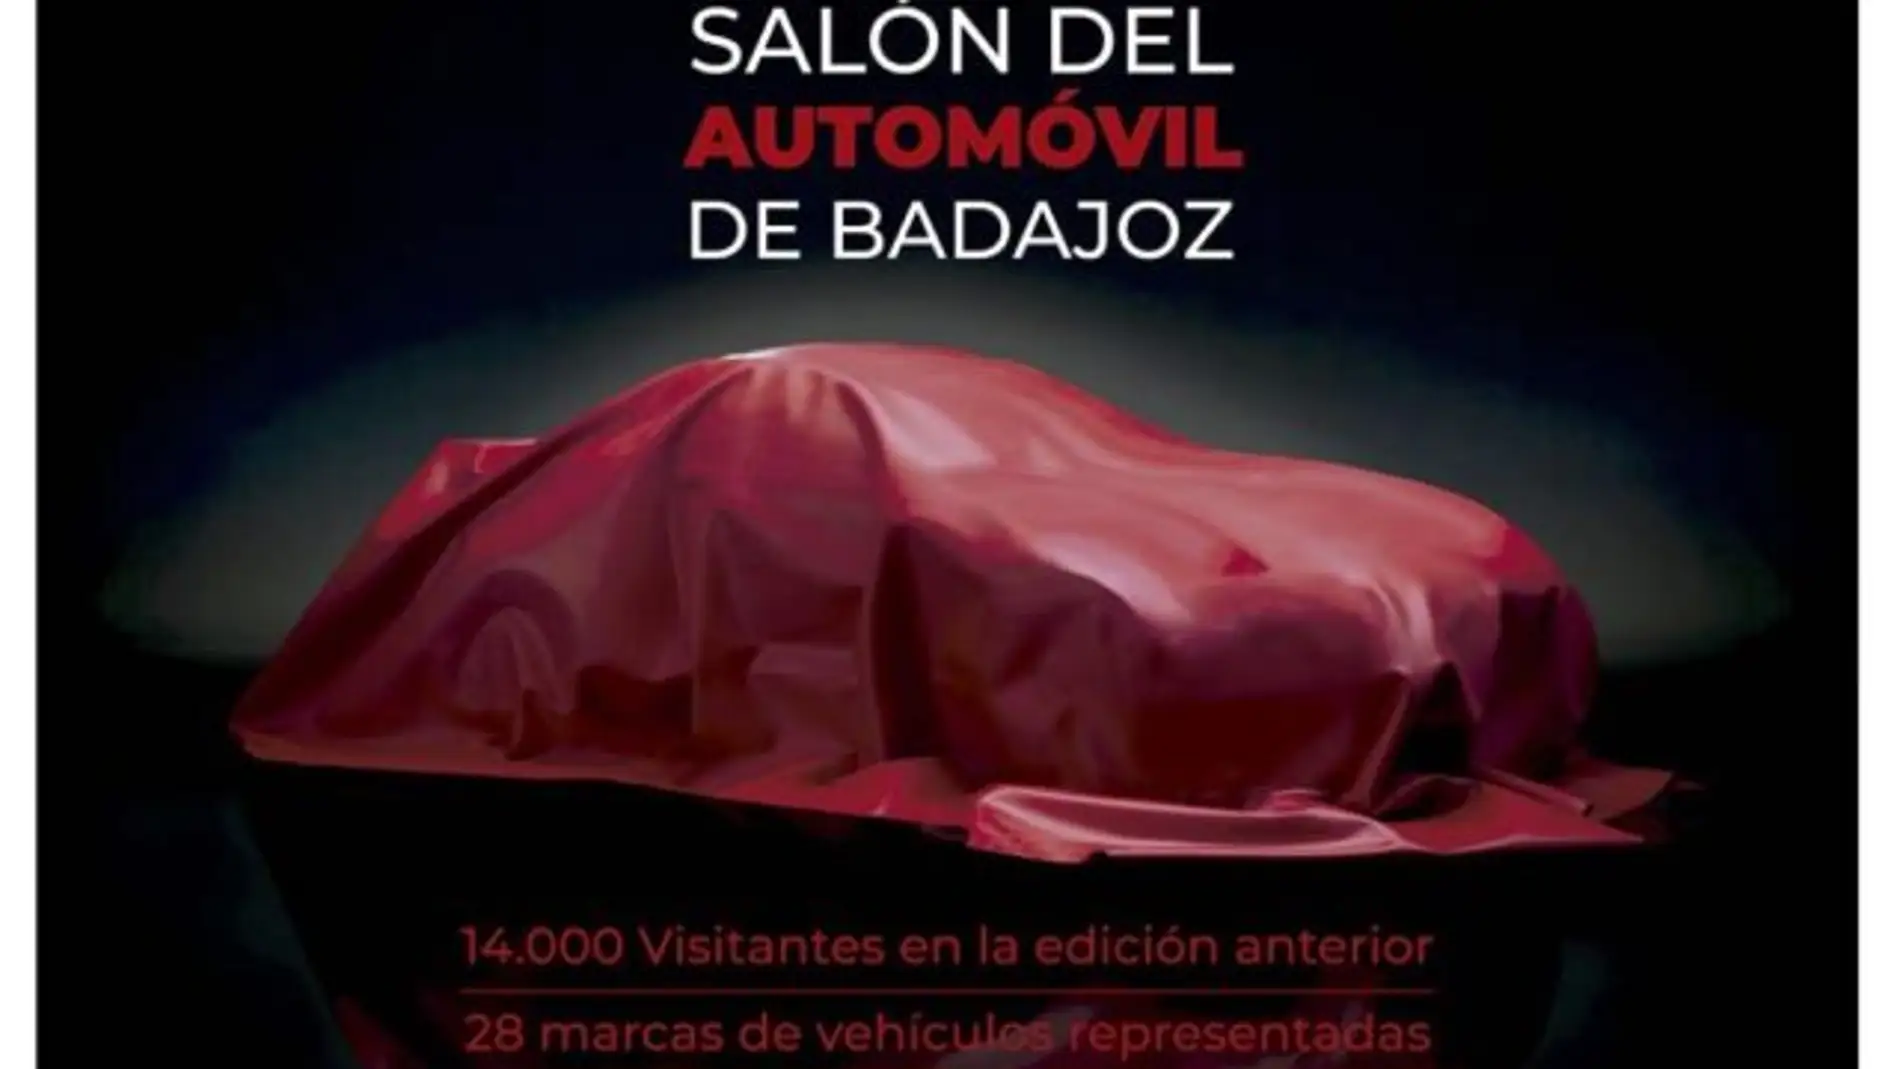 En marcha la X edición del Salón del Automóvil de Badajoz con las novedades del sector del motor en tecnología, diseño y seguridad